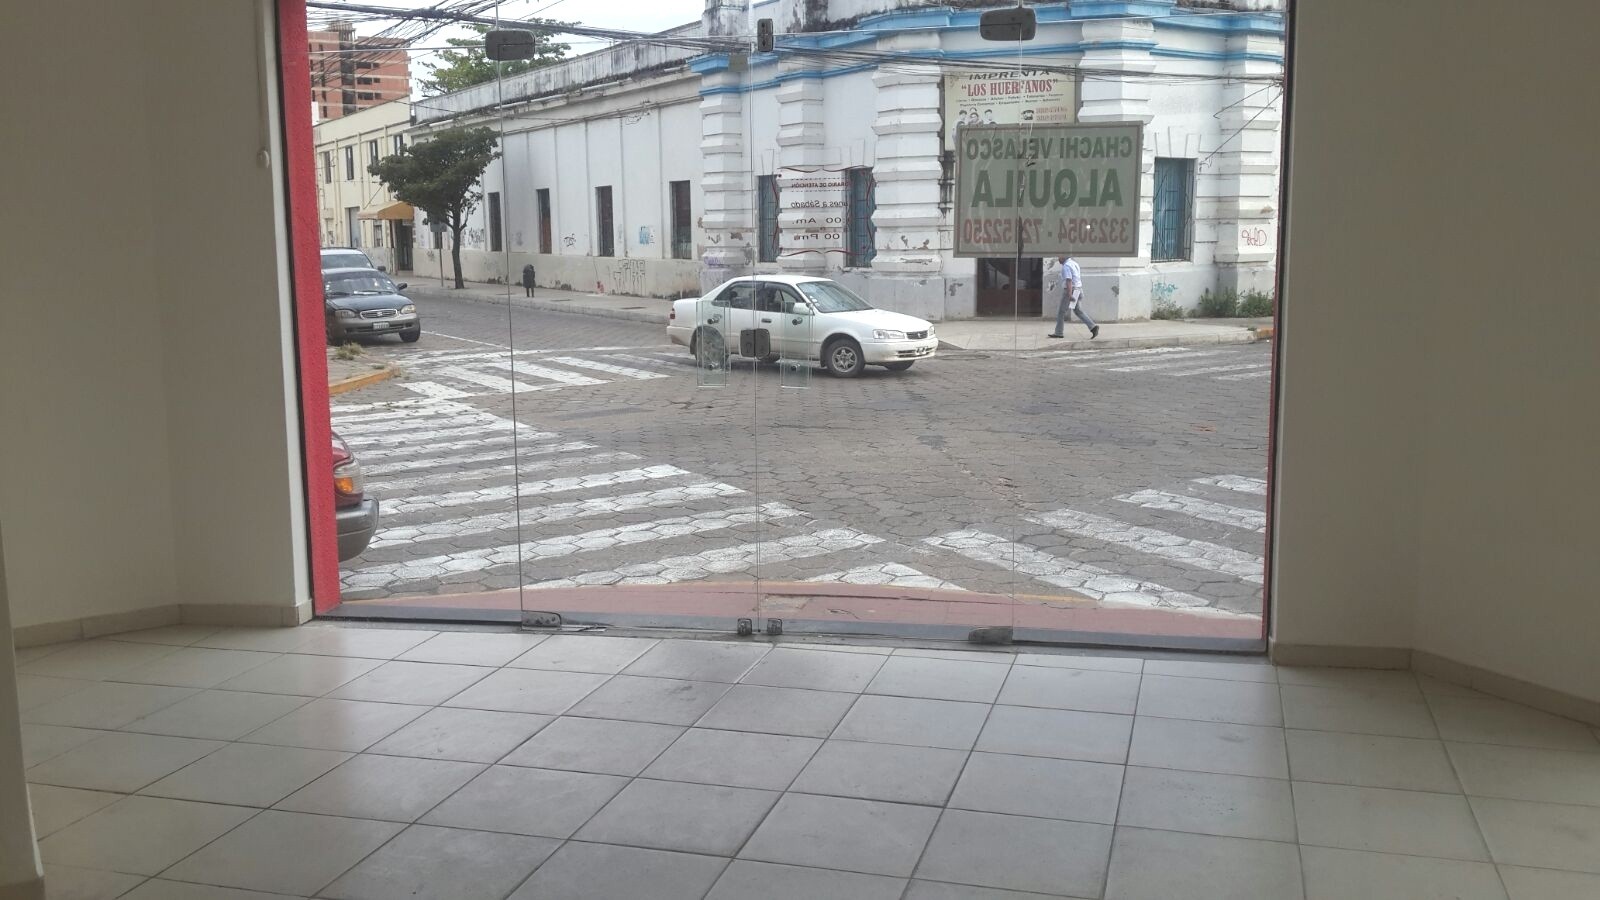 Local comercial LOCAL COMERCIAL EN ESQUINA SOBRE CALLE RENE MORENO Foto 11